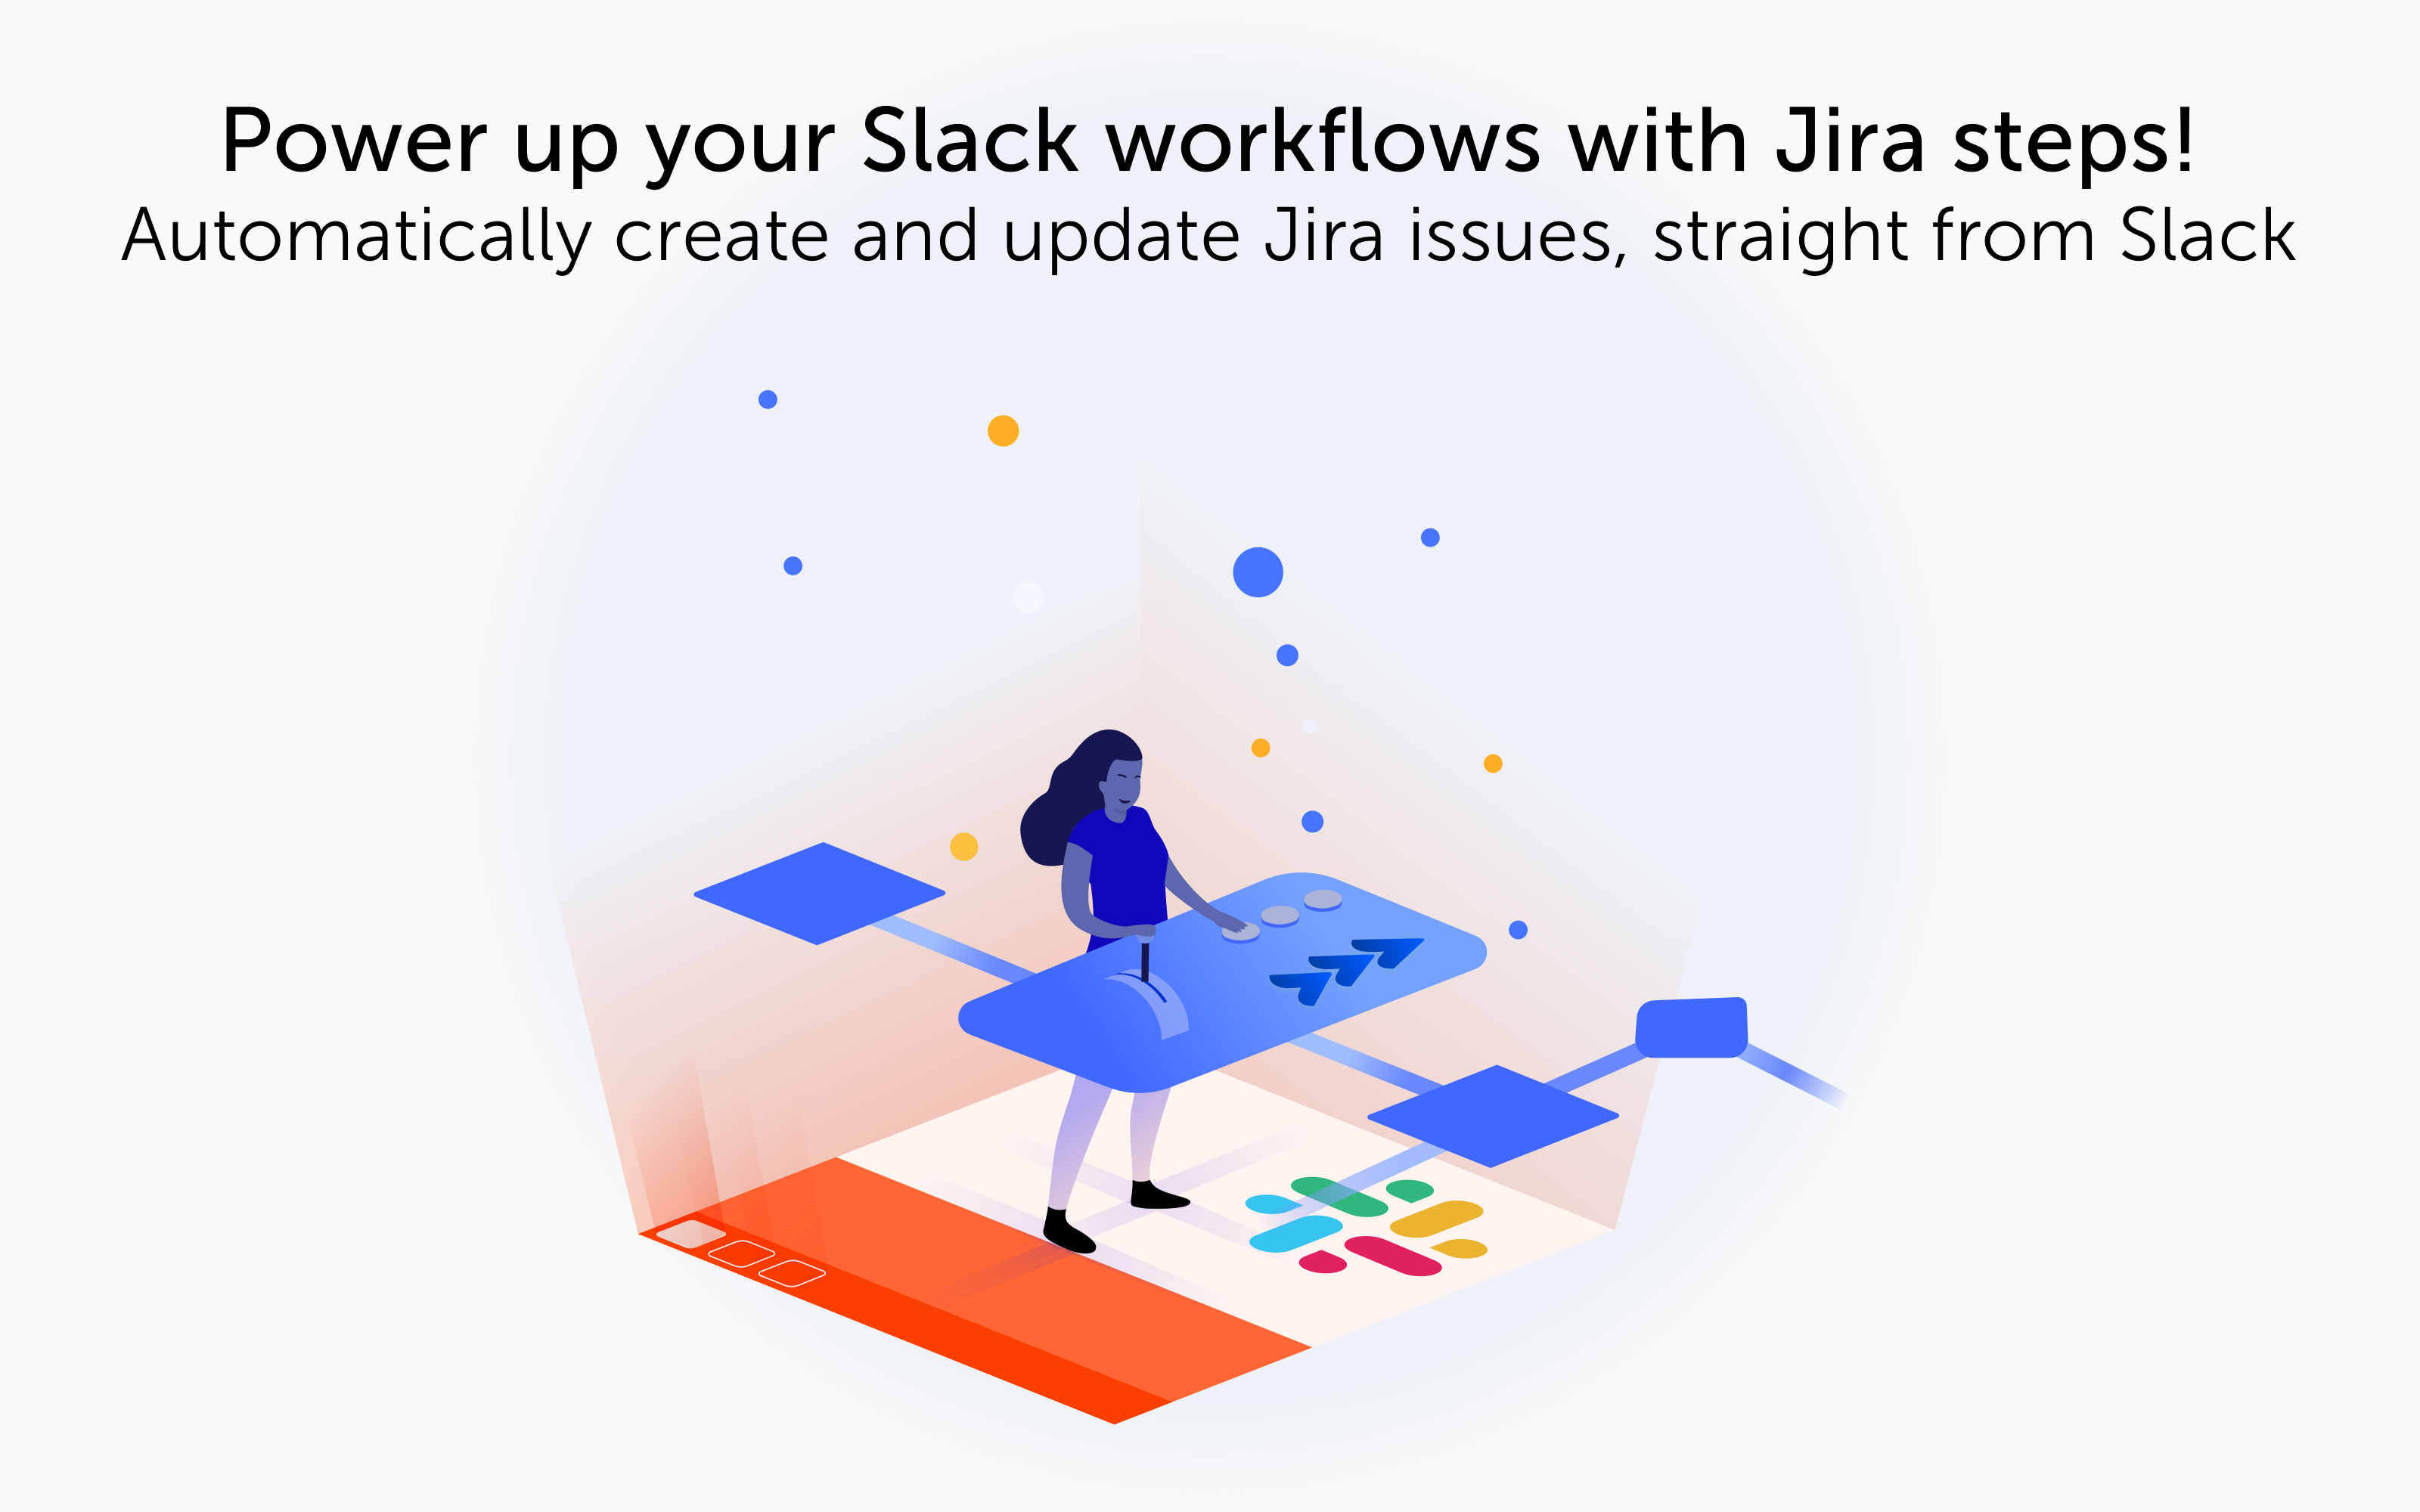 slack workflow builder google sheets